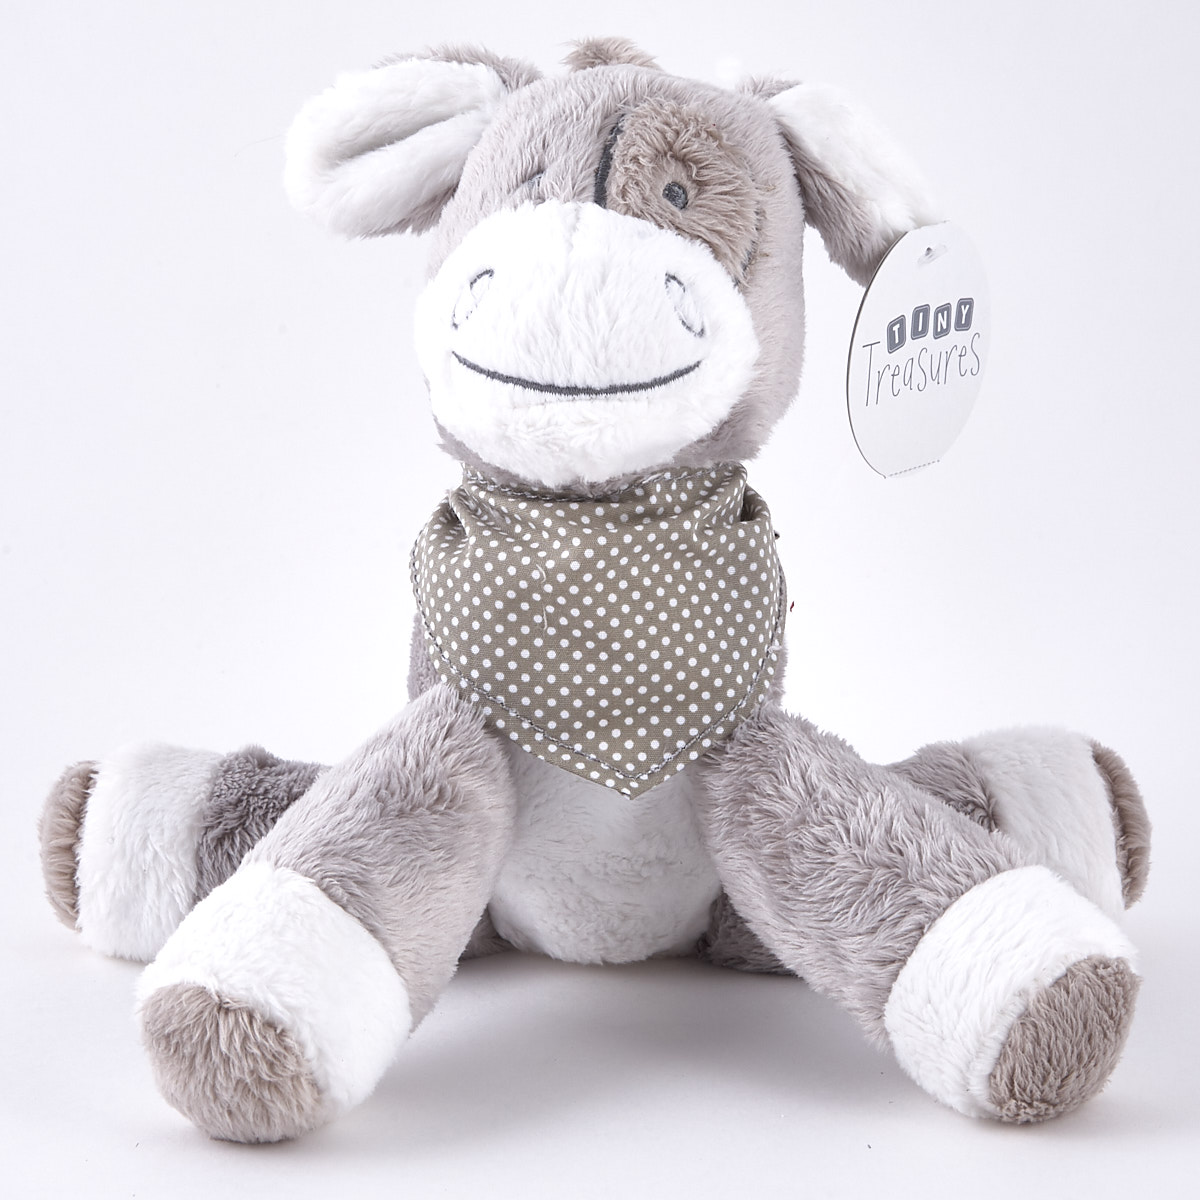 Tiny Treasures - Grey & White Donkey With Neckerchief